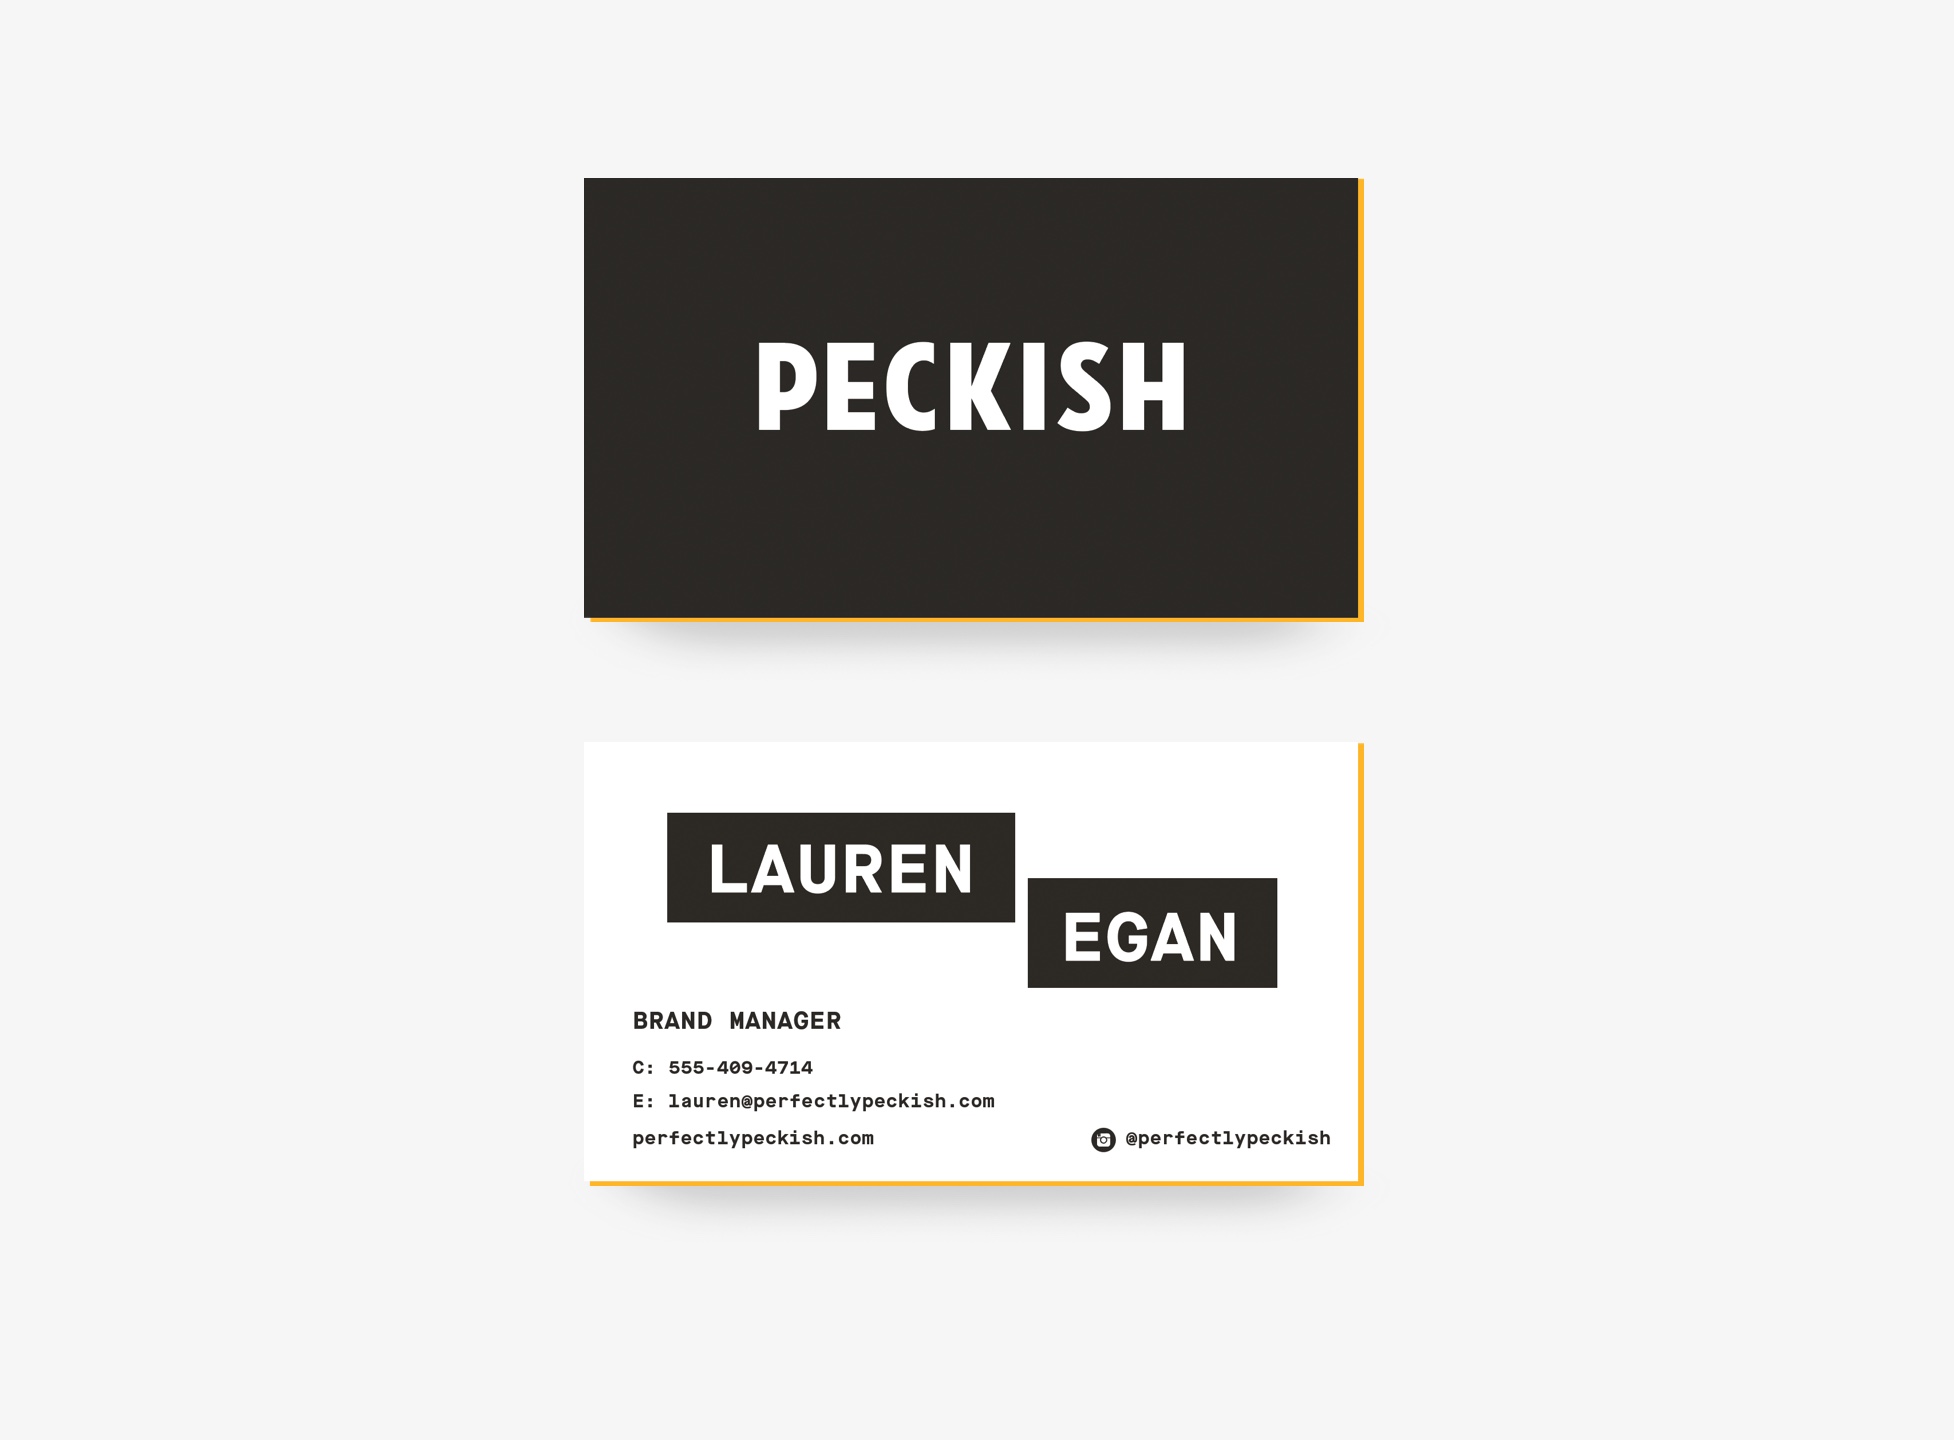 peckish-image-04v